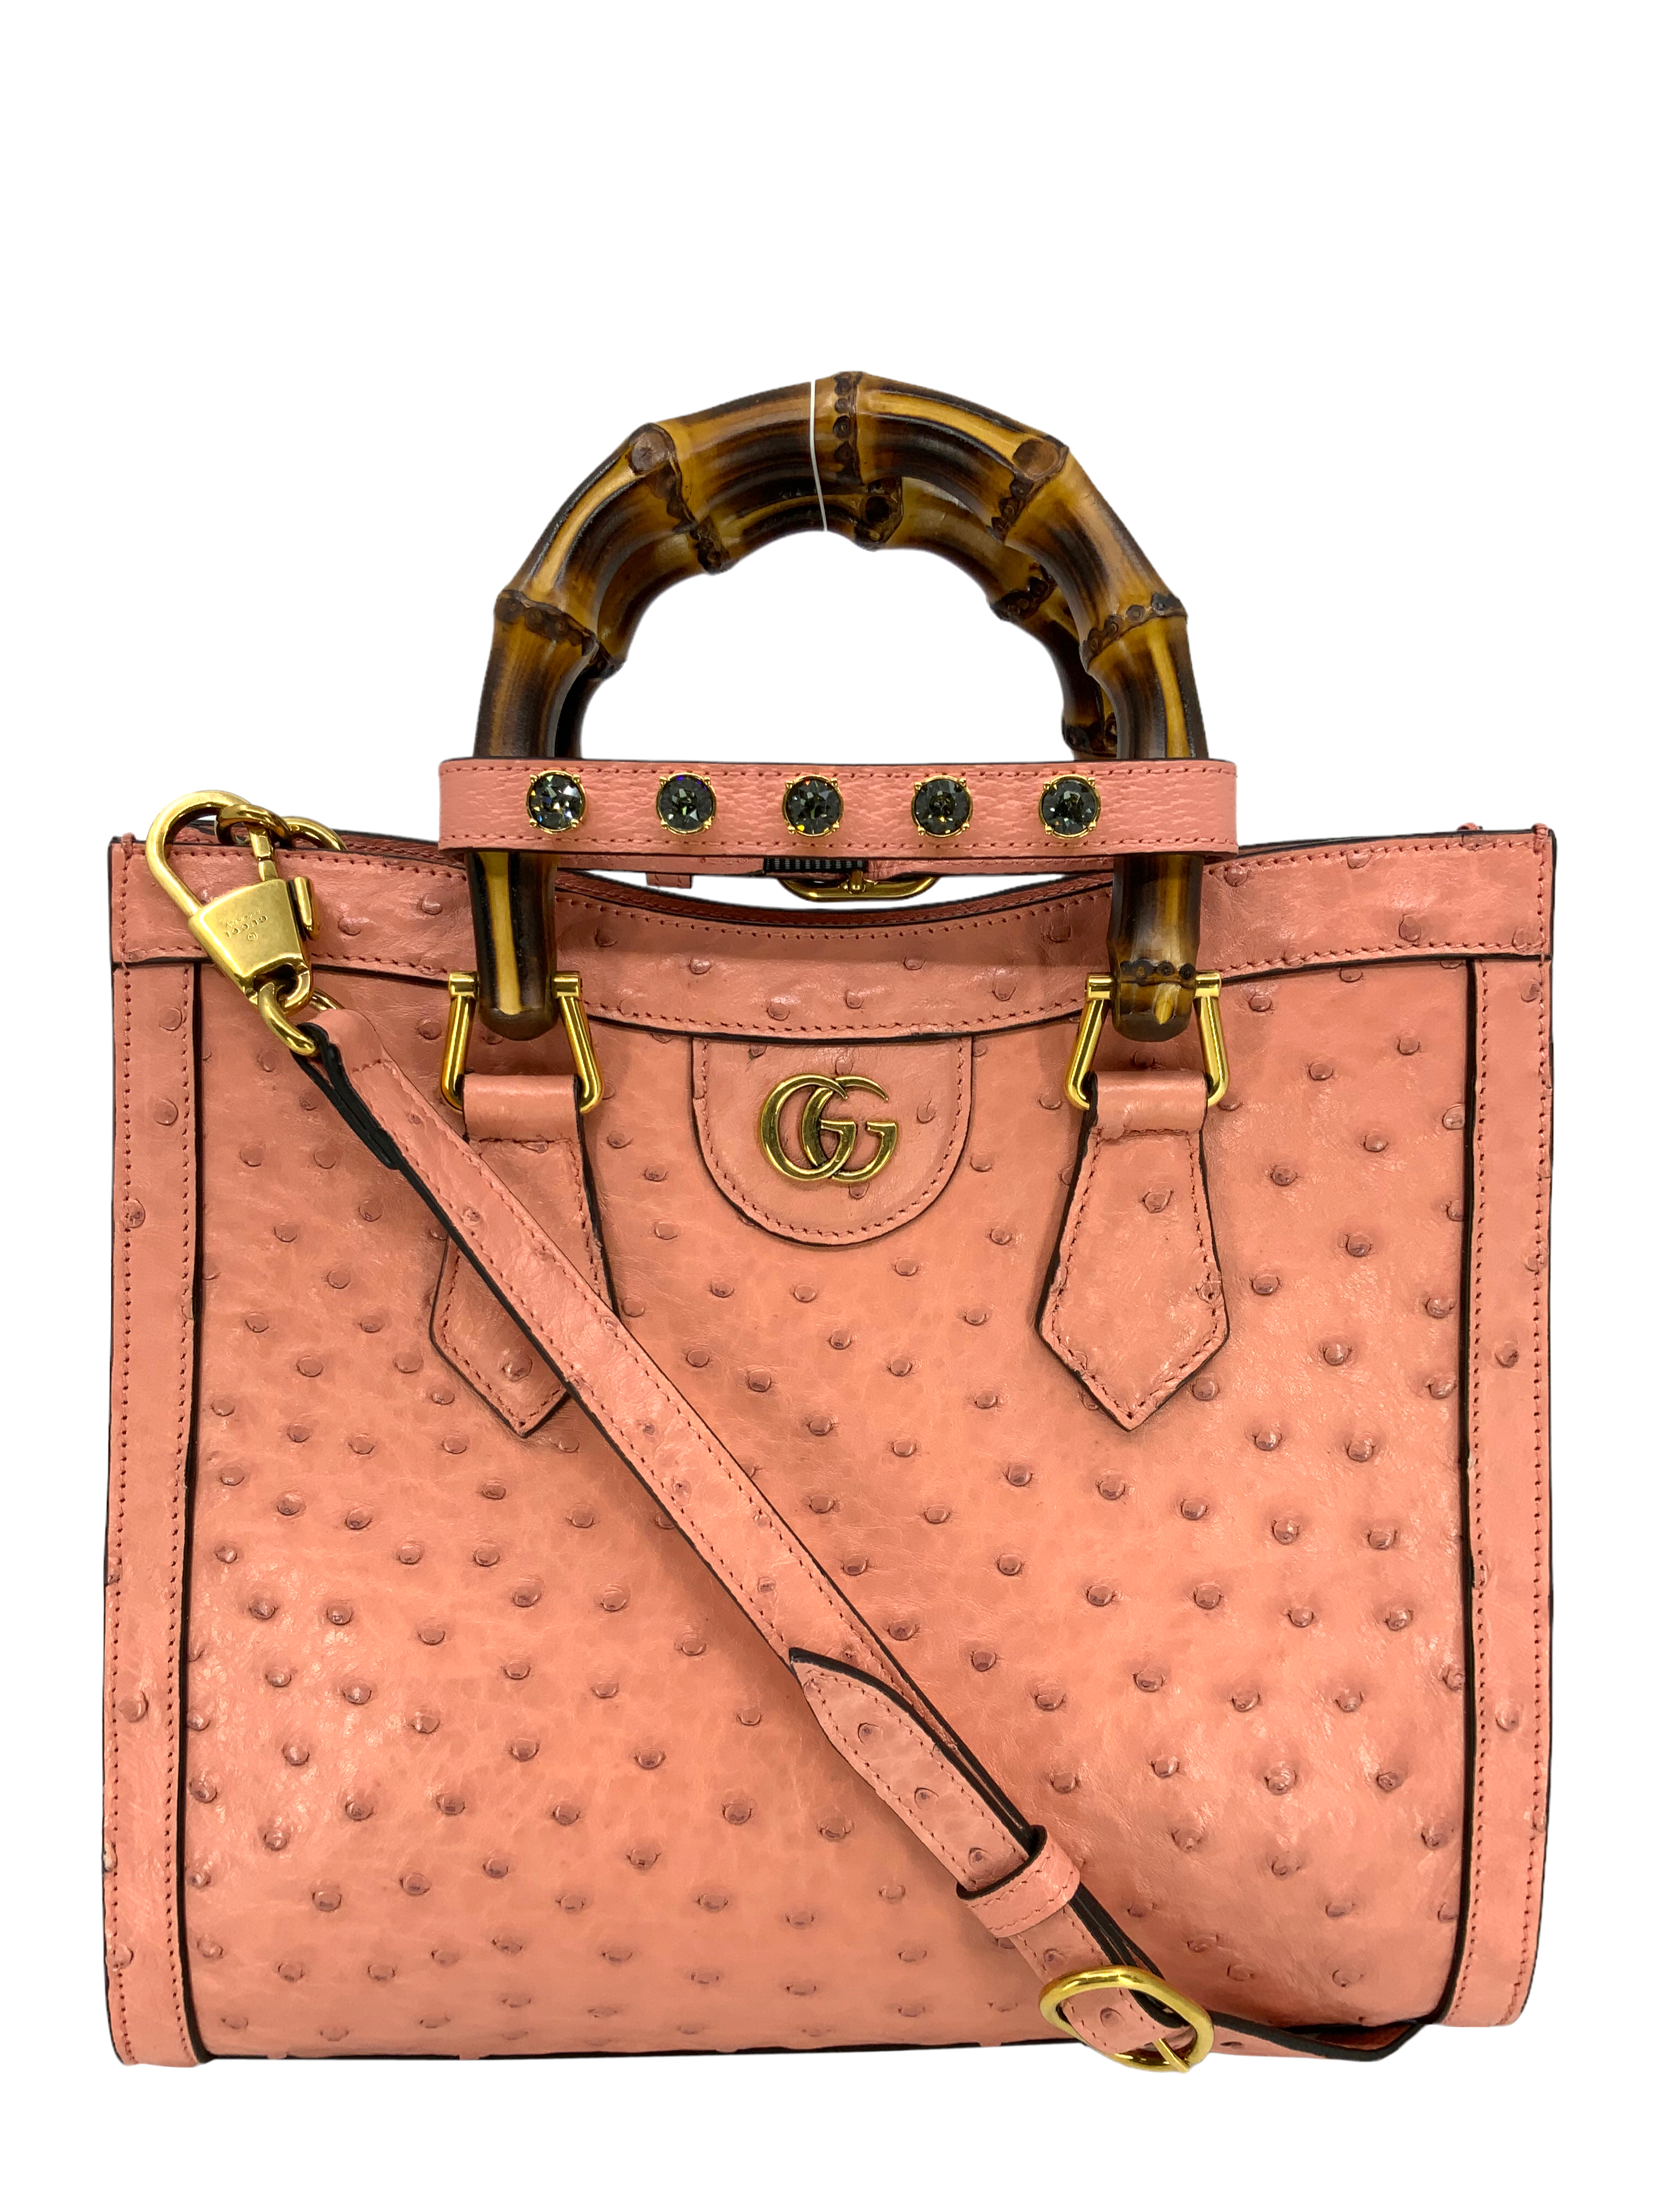 Gucci, Accessories, Gucci Authentic Orange Leather Key Case